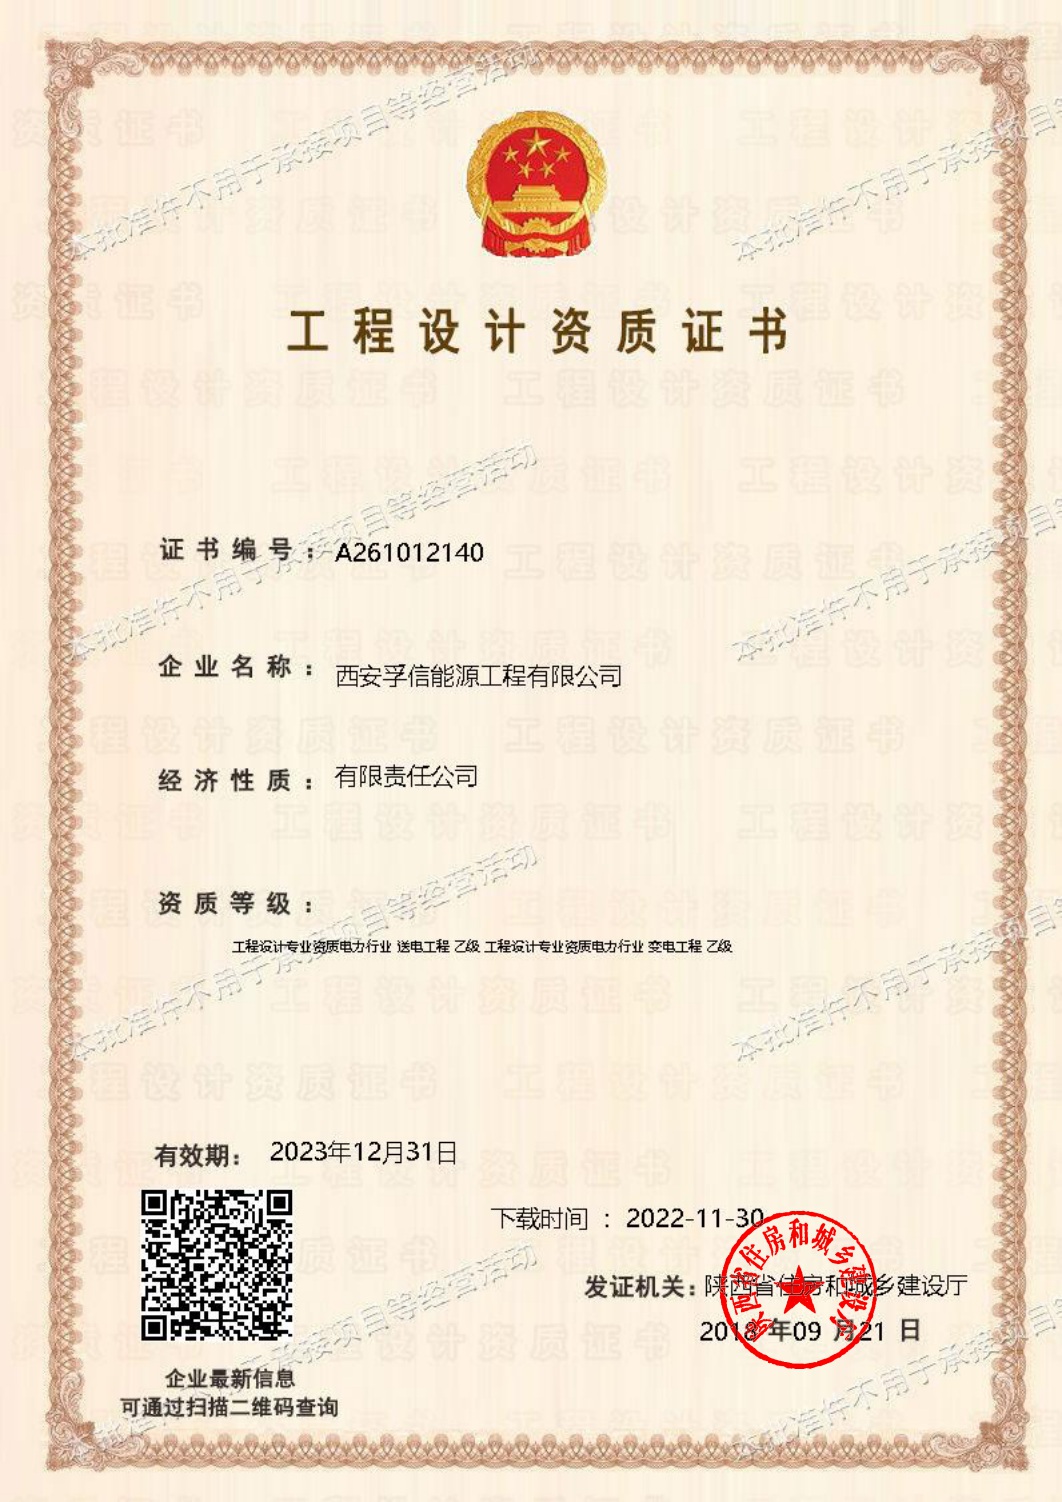 Engineering Qualification Certificate.jpg